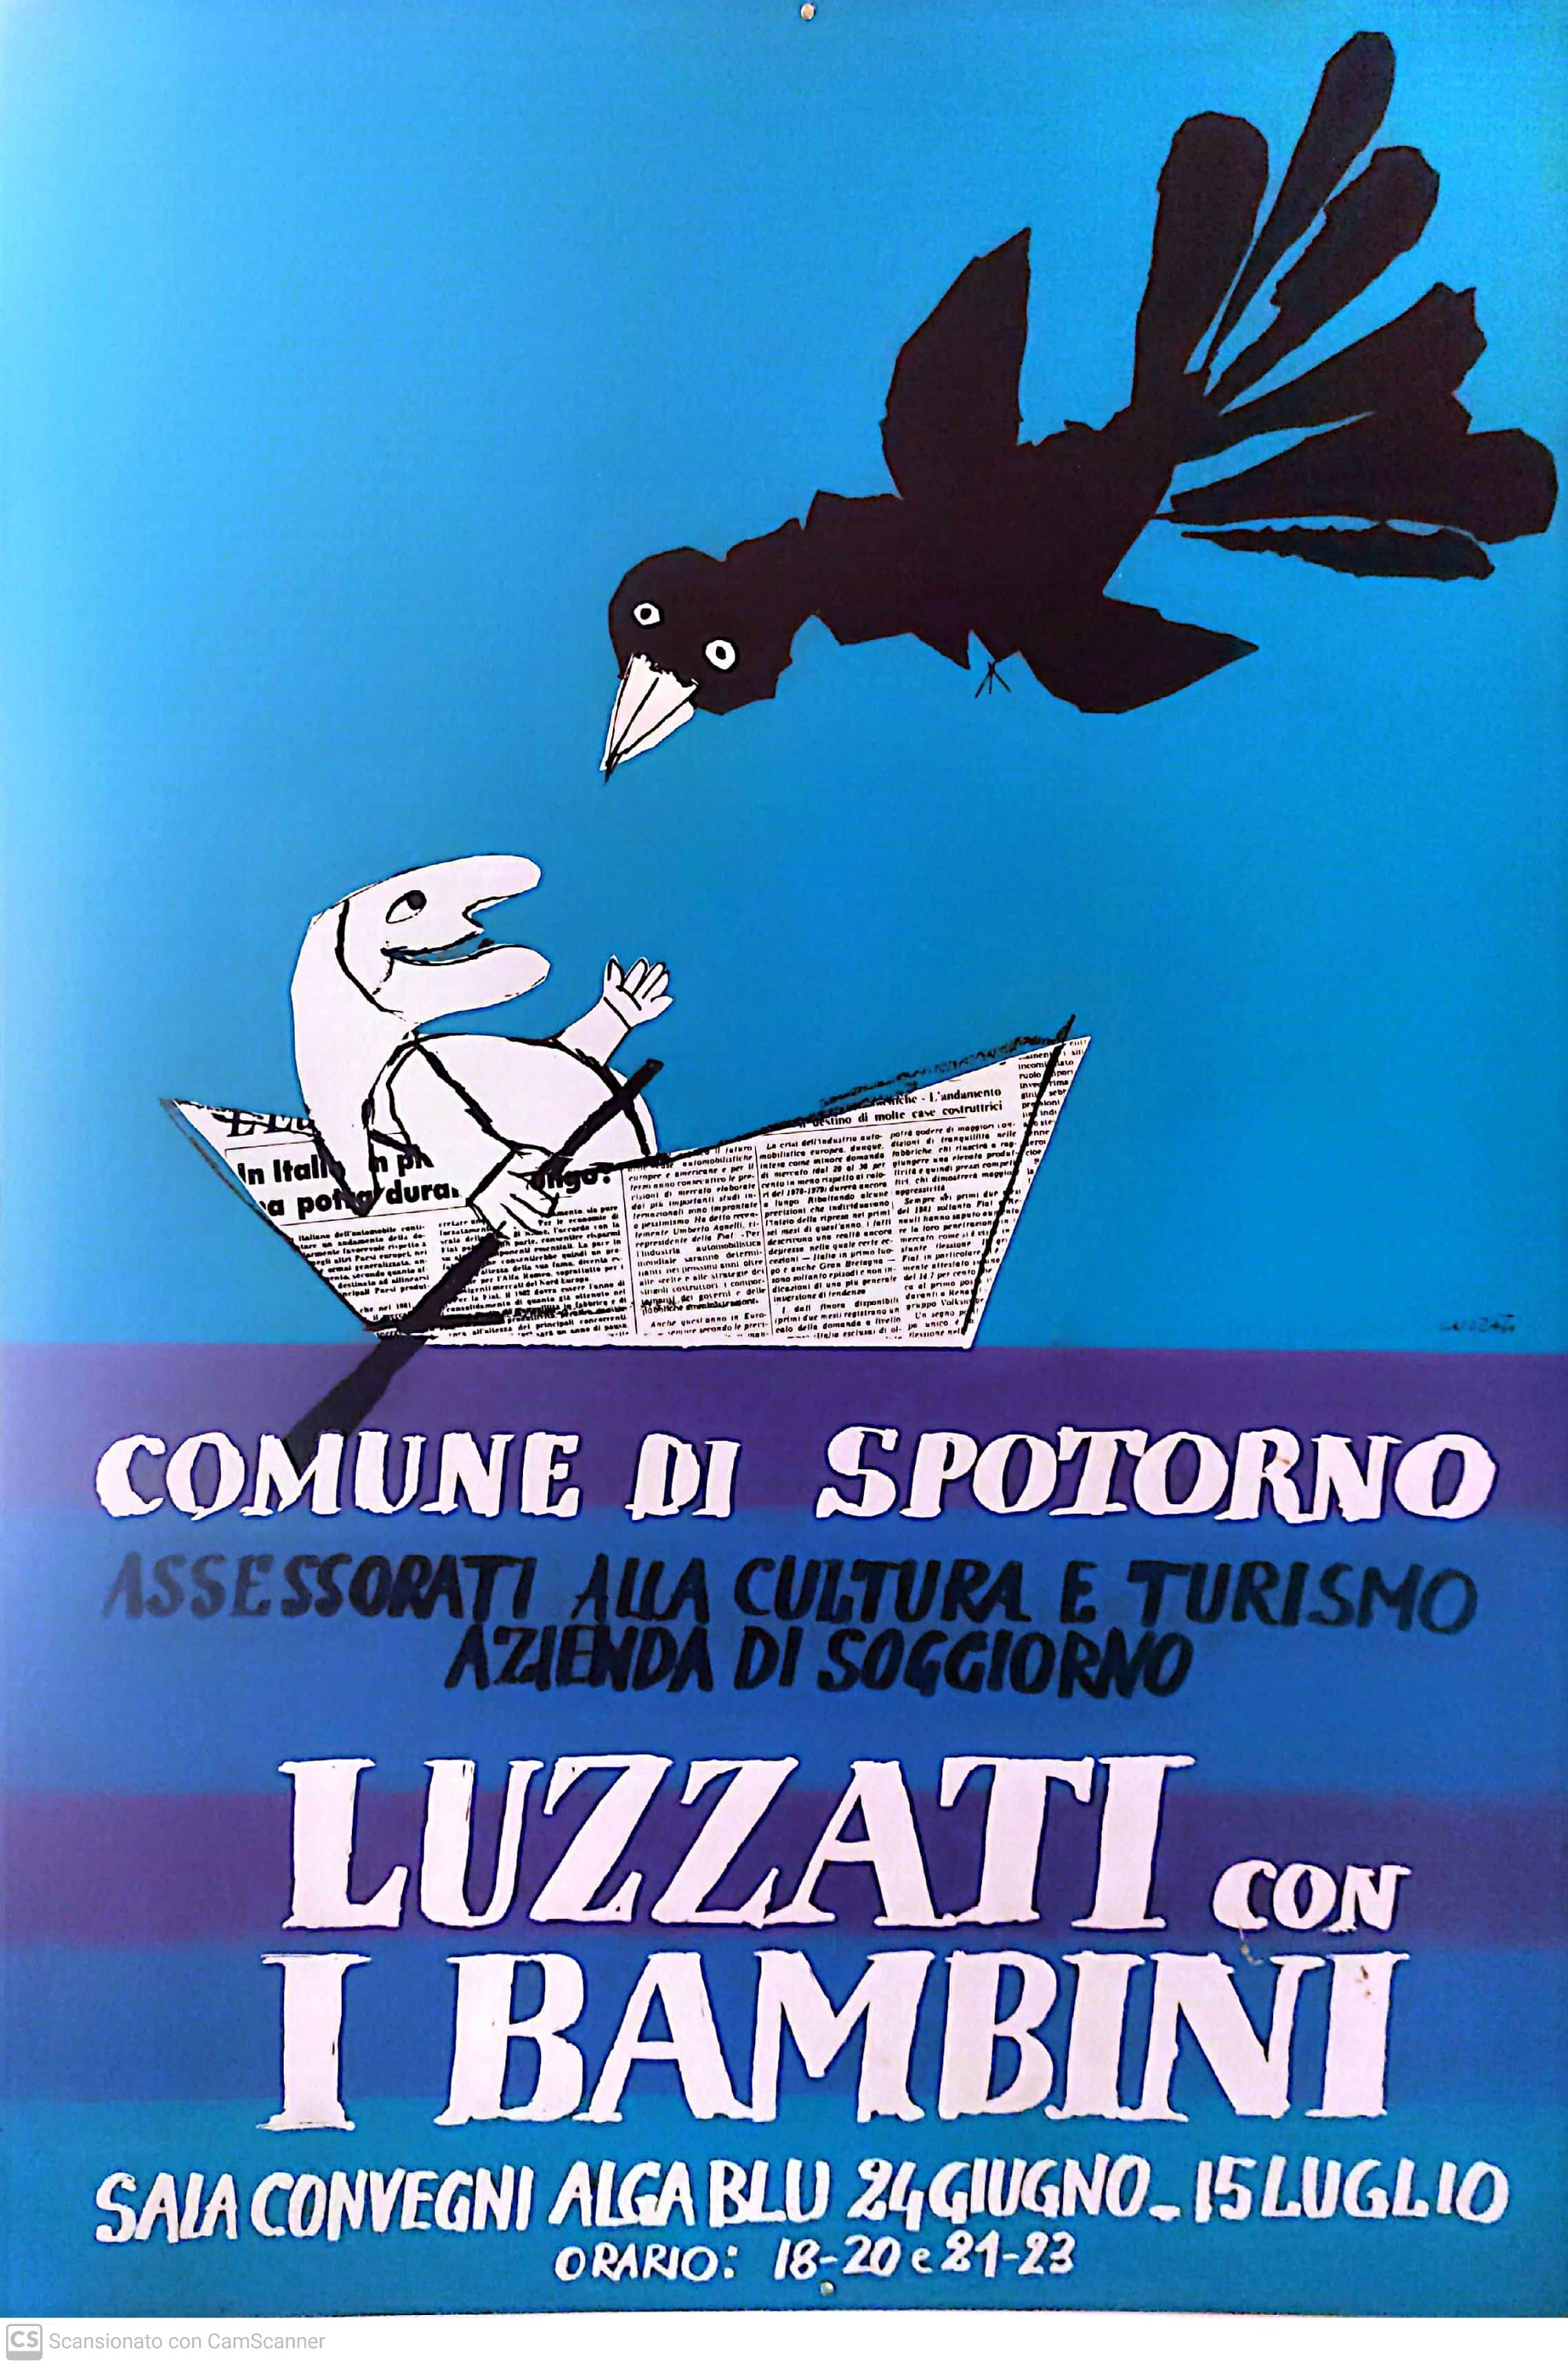 Luzzati con i bambini, Comune di Spotorno, 1982